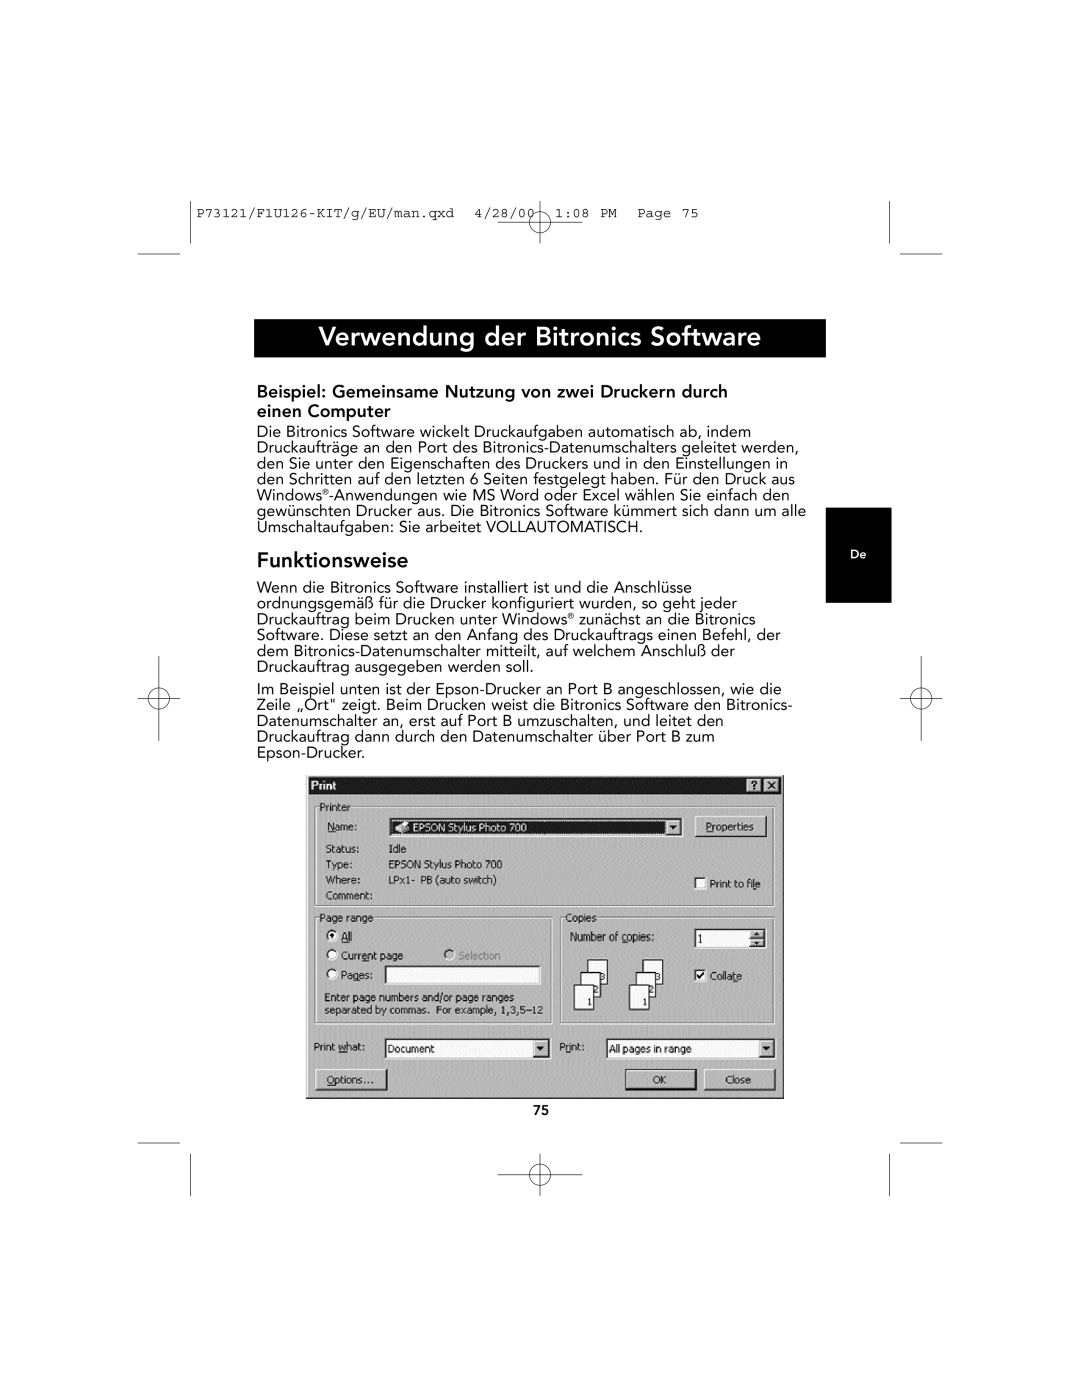 Belkin F1U126-KIT, P73121 user manual Verwendung der Bitronics Software, Funktionsweise 